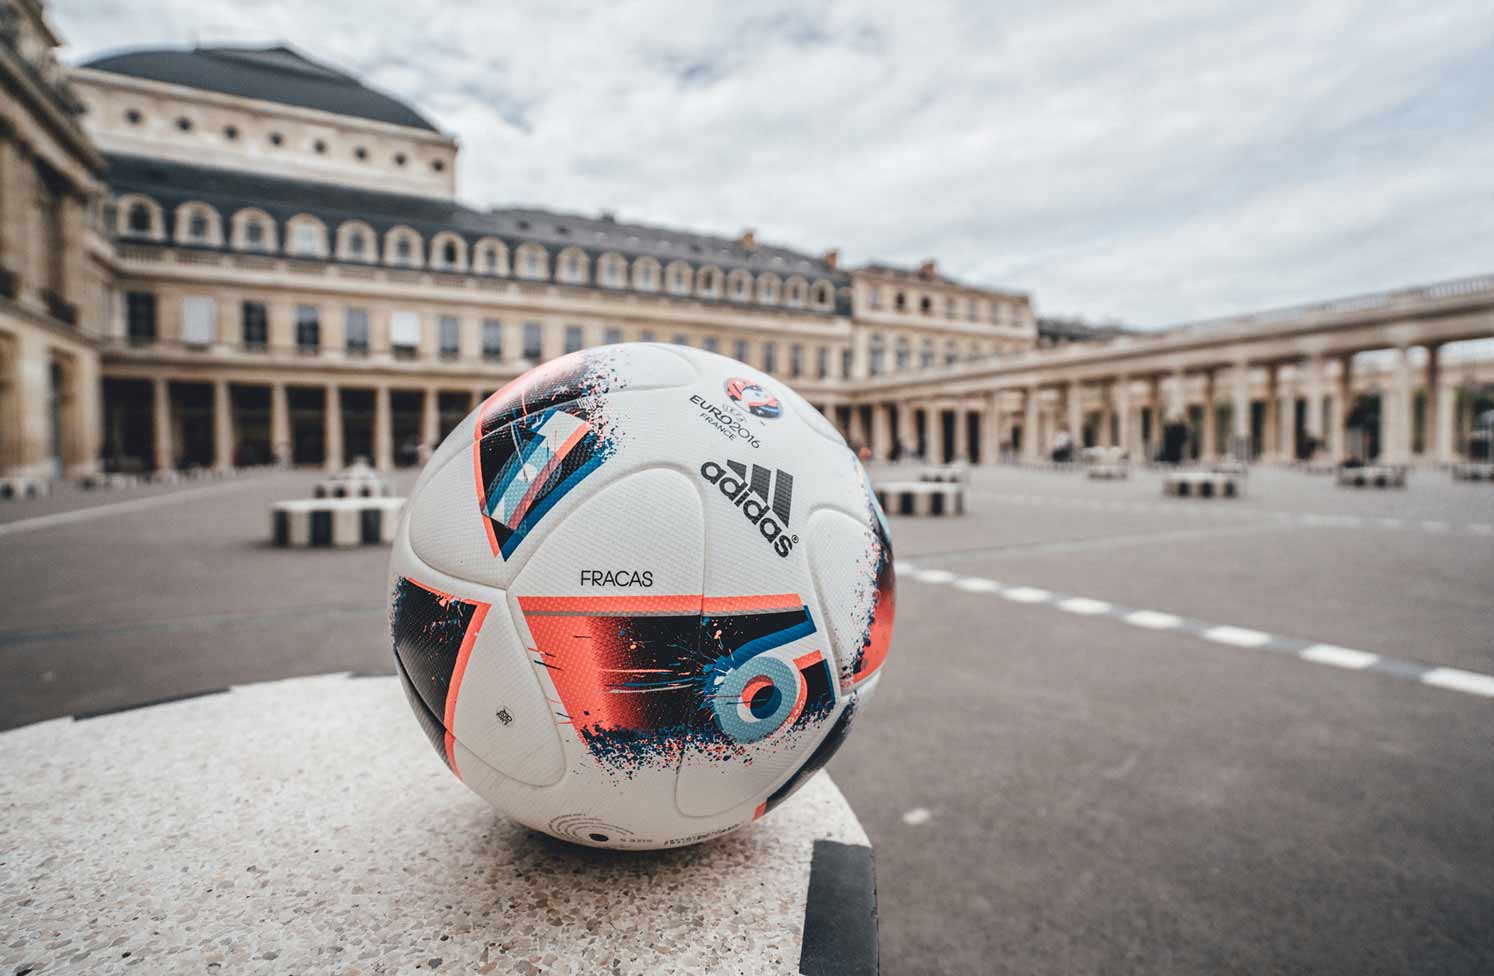 Официальный мяч финала Евро 2016 - Fracas